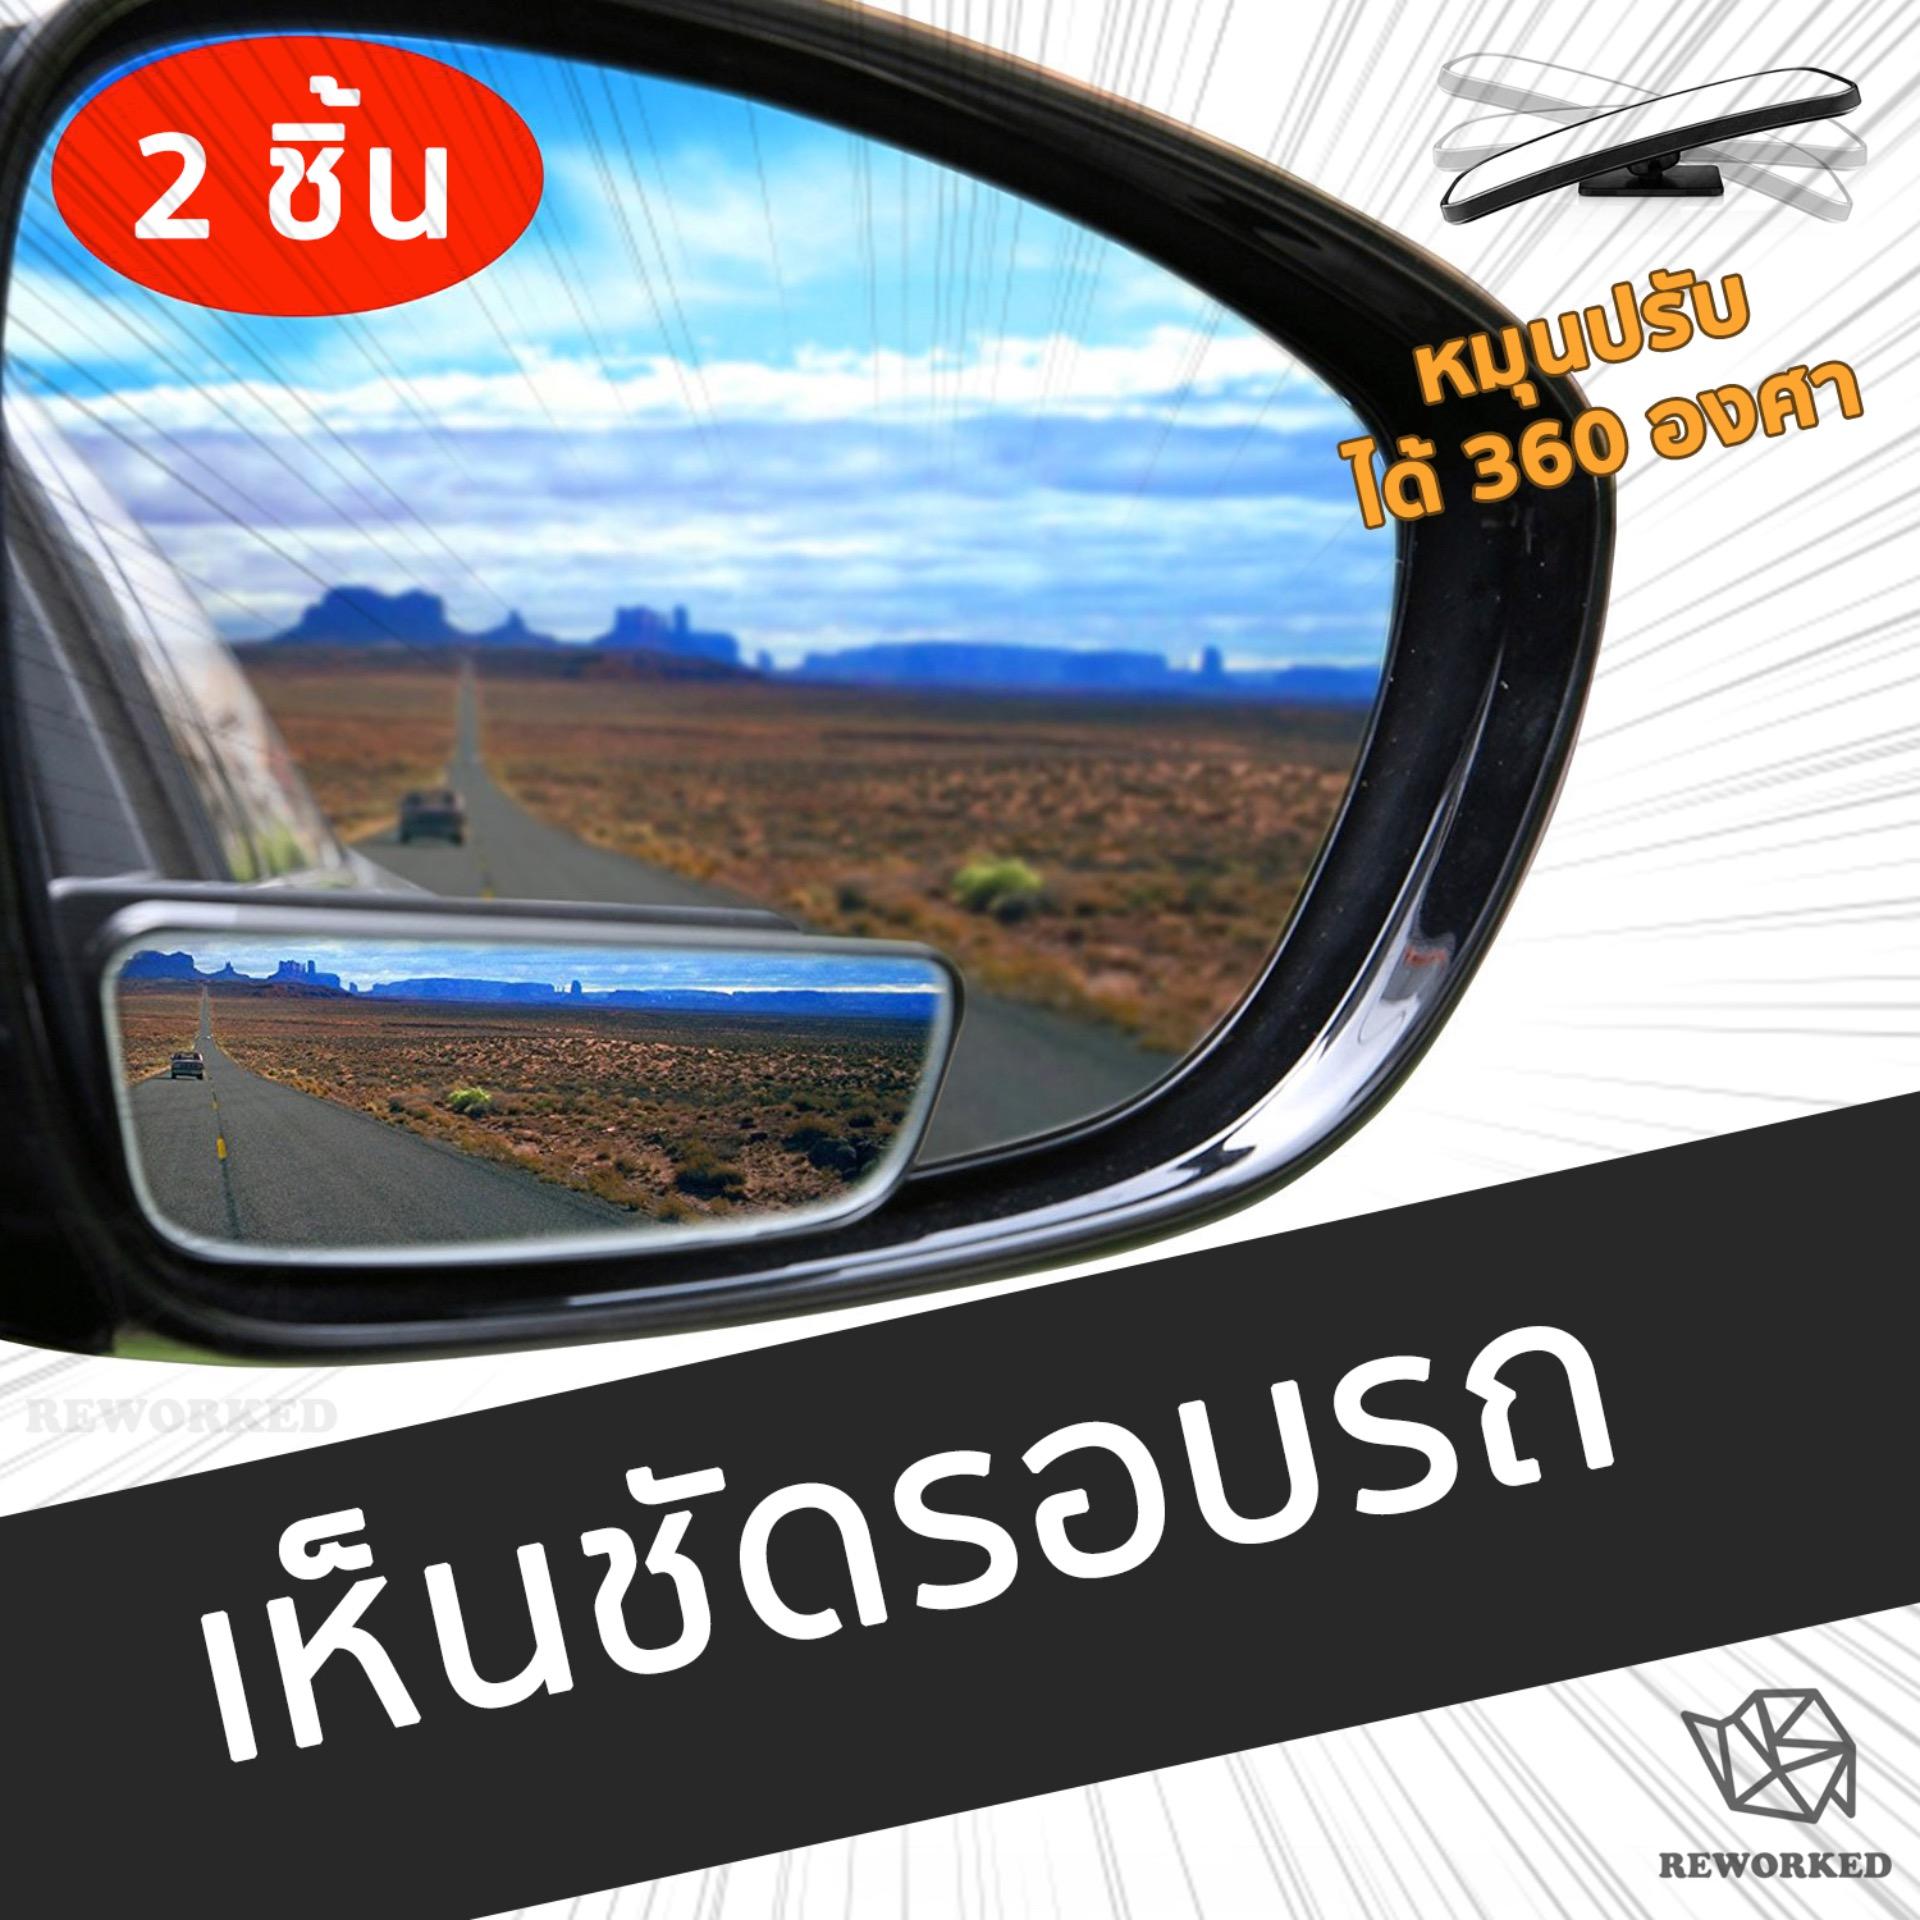 กระจกสี่เหลี่ยมข้างรถยนต์ เพิ่มการมองเห็น กระจกมองข้าง ใส่ได้กับรถทุกรุ่น 2 ชิ้น Blind Spot Mirrors Car Accessories